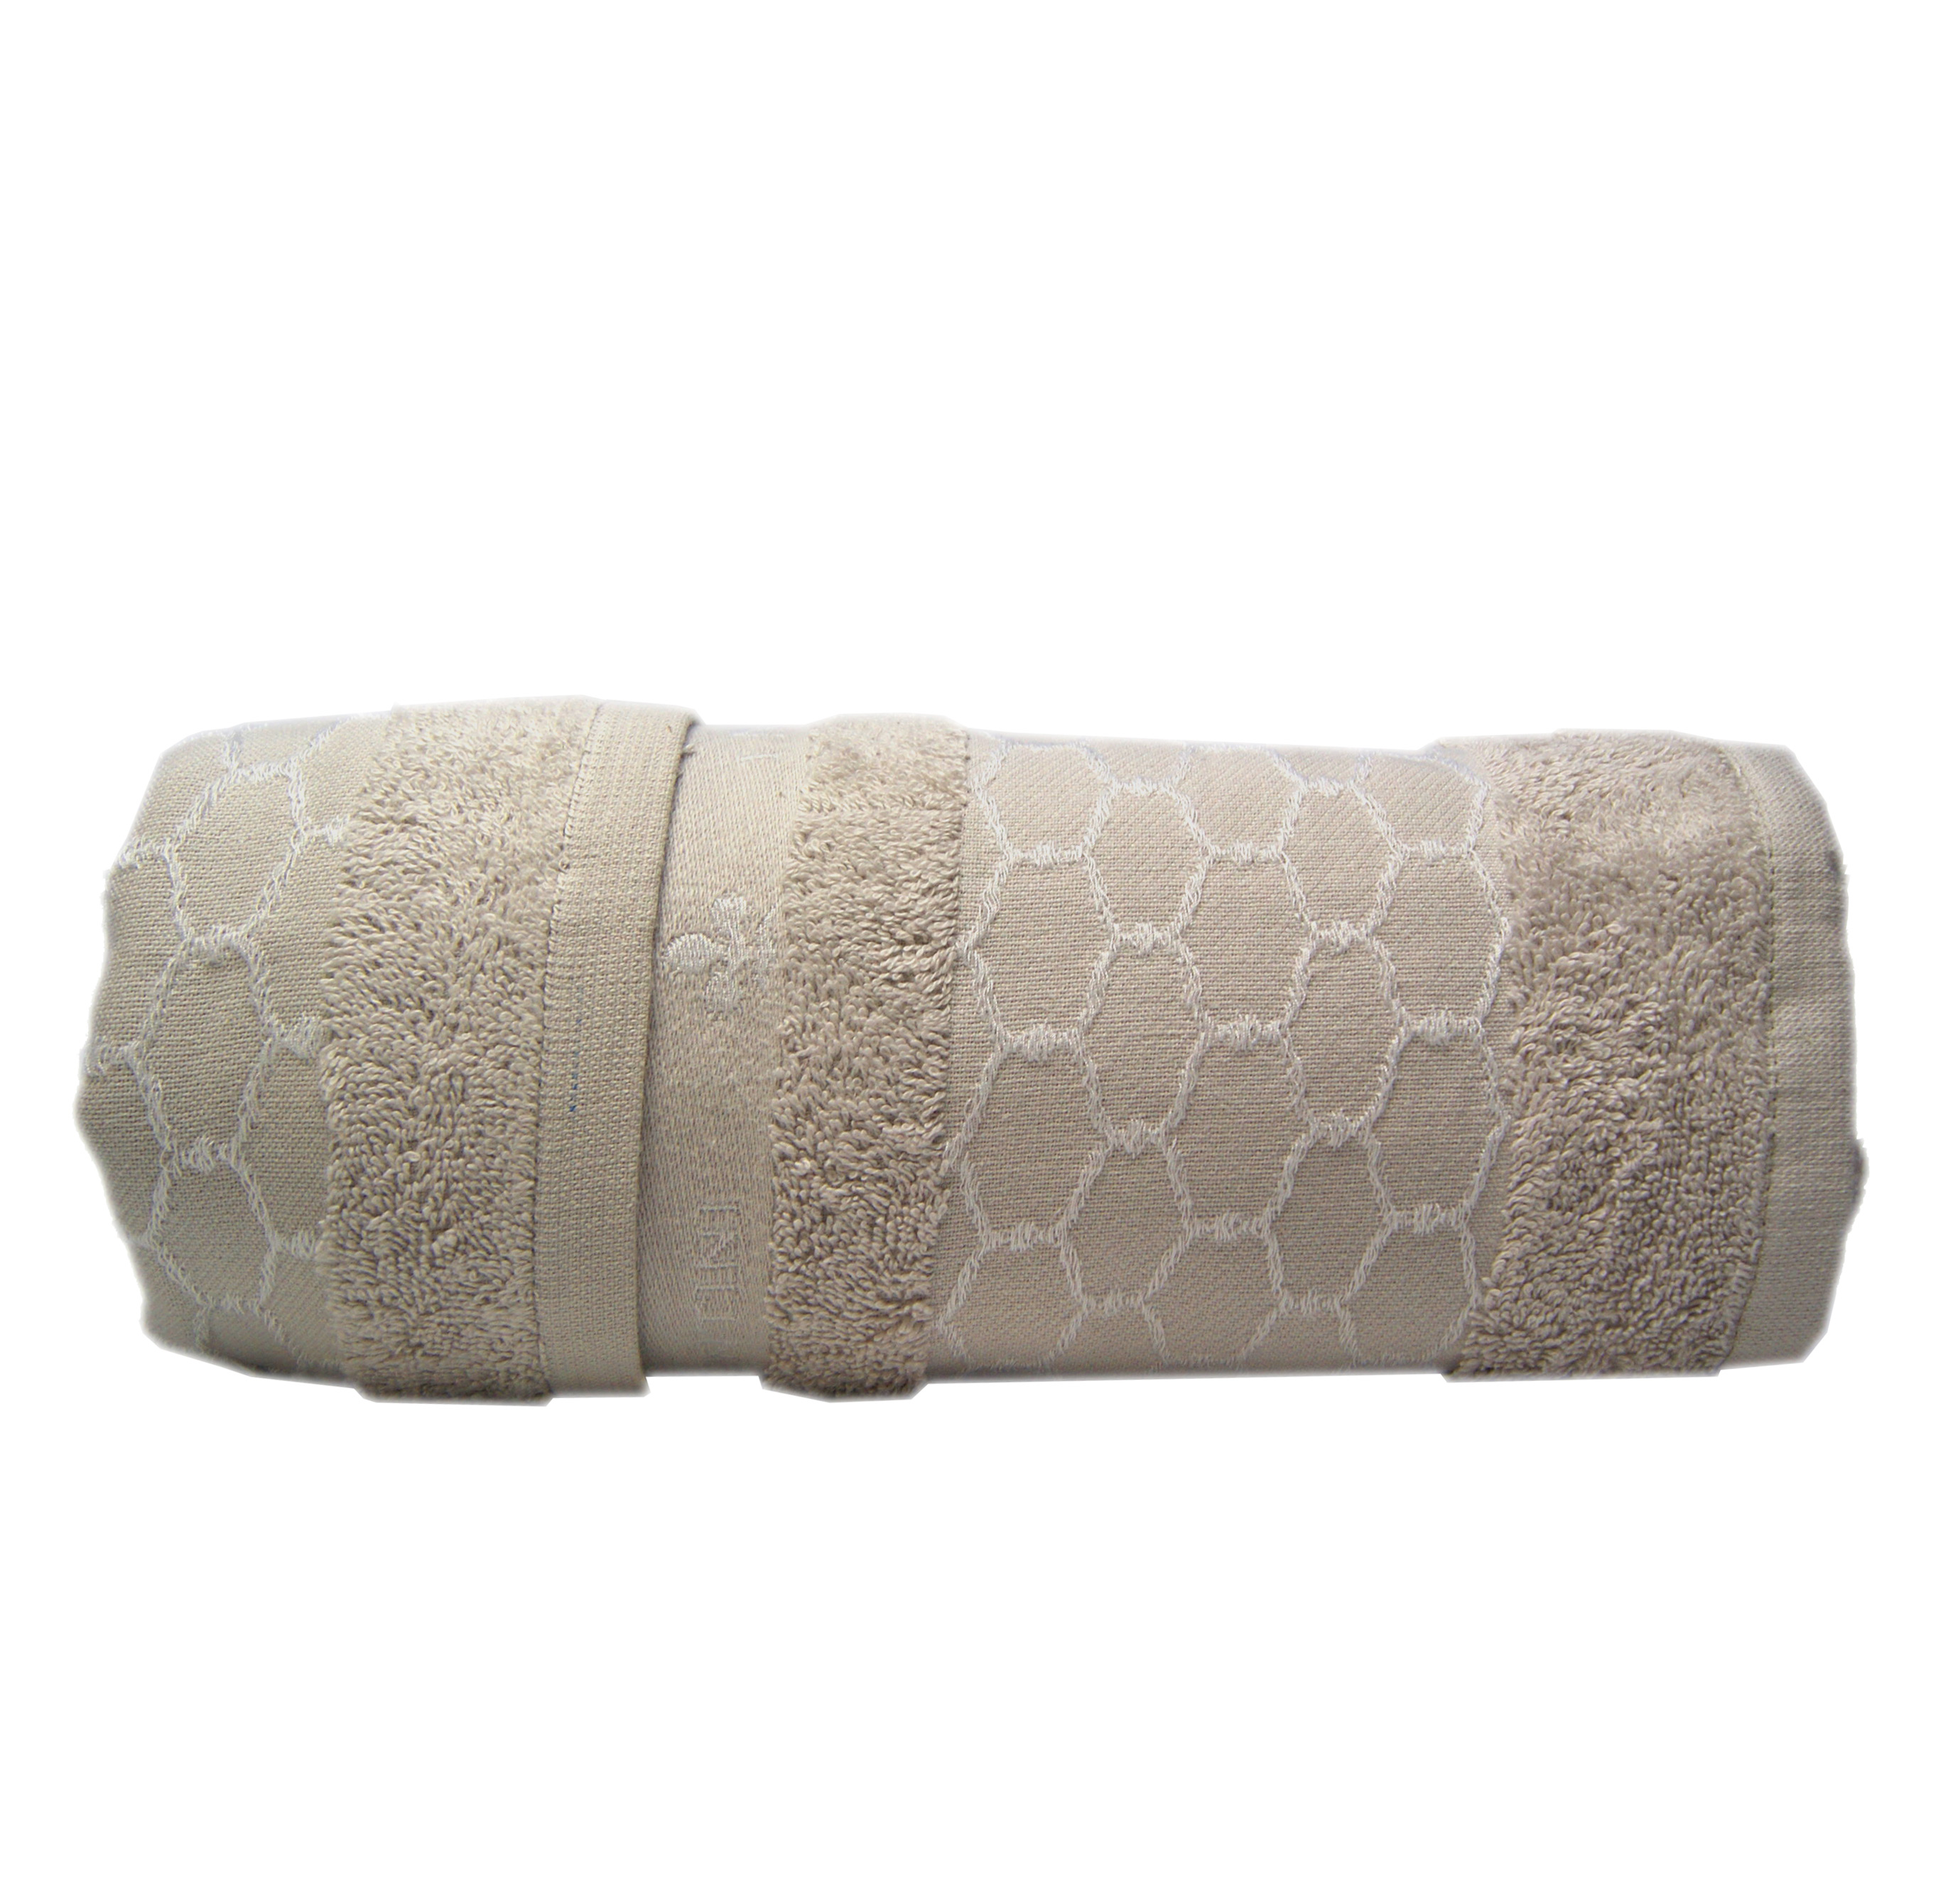 Asciugamani bagno spugna cotone colore tortora offerta esclusiva 6 pezzi 3  grandi + 3 ospite colori terra – Piliero